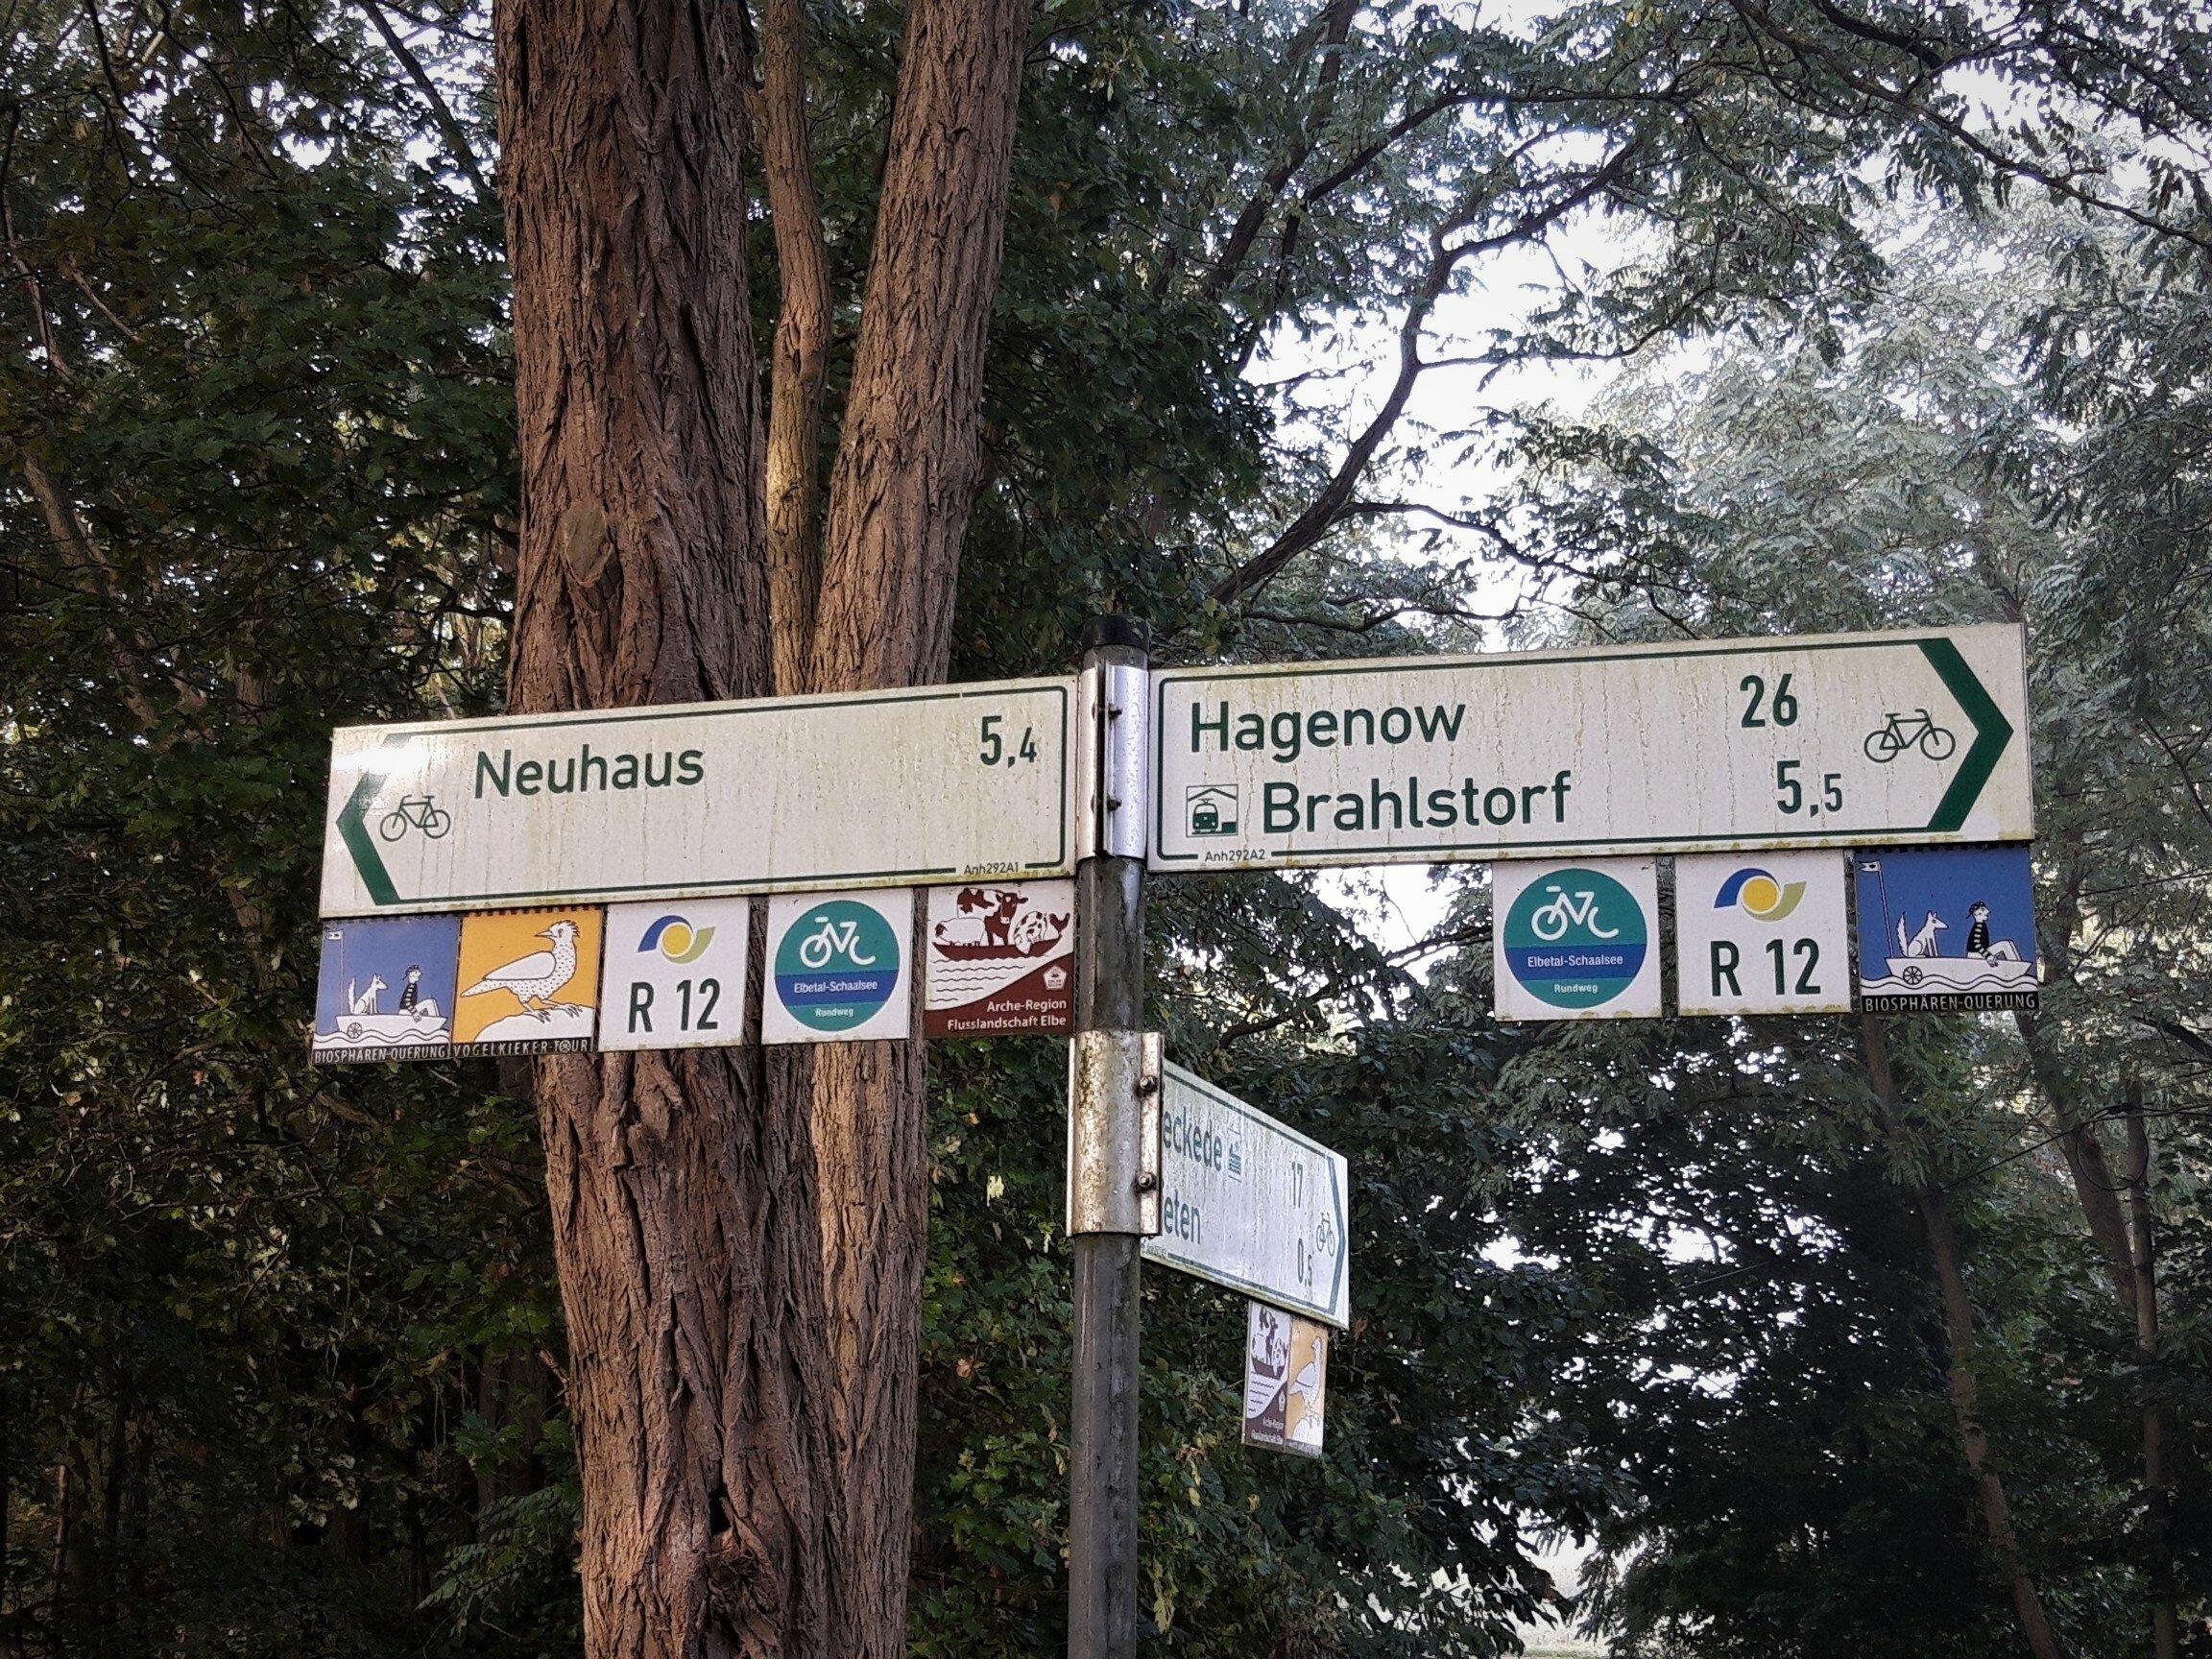 Radwege-Hinweisschilder nach Neuhaus und Brahlstorf, unterlegt mit Logos und Bezeichnungen fünf verschiedener Themenrouten: Biosphären-Querung, Vogelkieker-Tour, R12, Elbetal-Schaalsee-Radweg sowie Arche-Region Flusslandschaft Elbe.